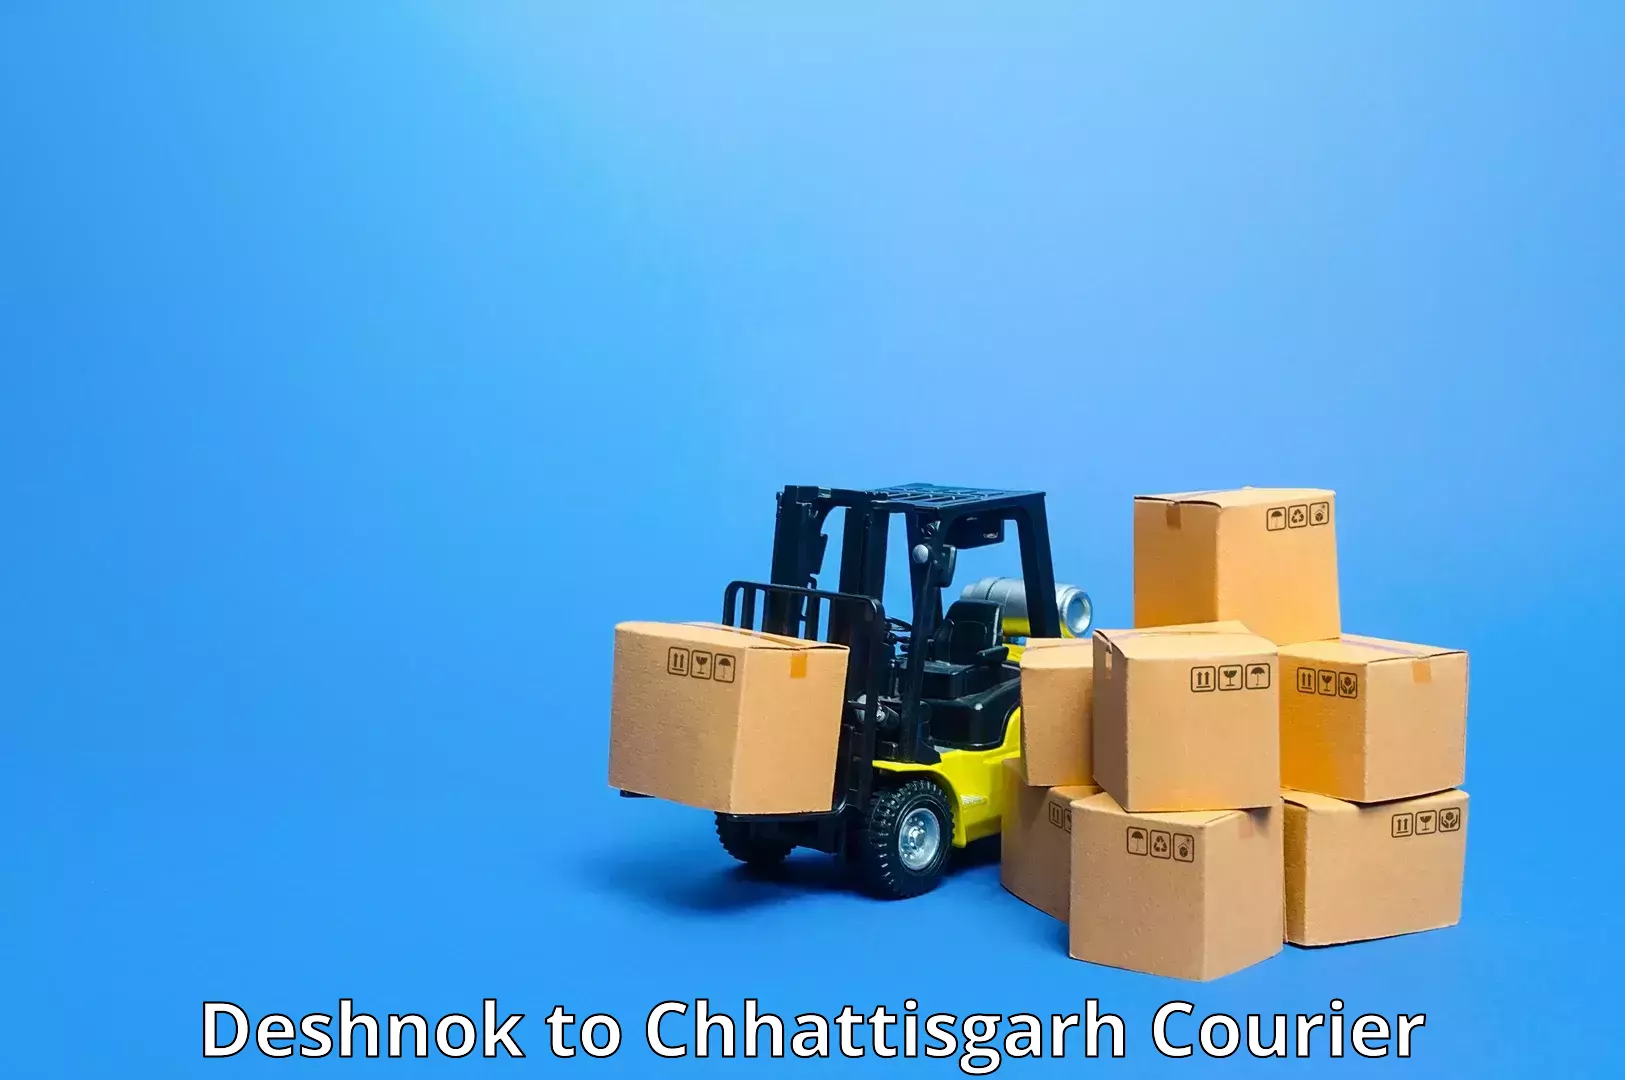 State-of-the-art courier technology Deshnok to NIT Raipur